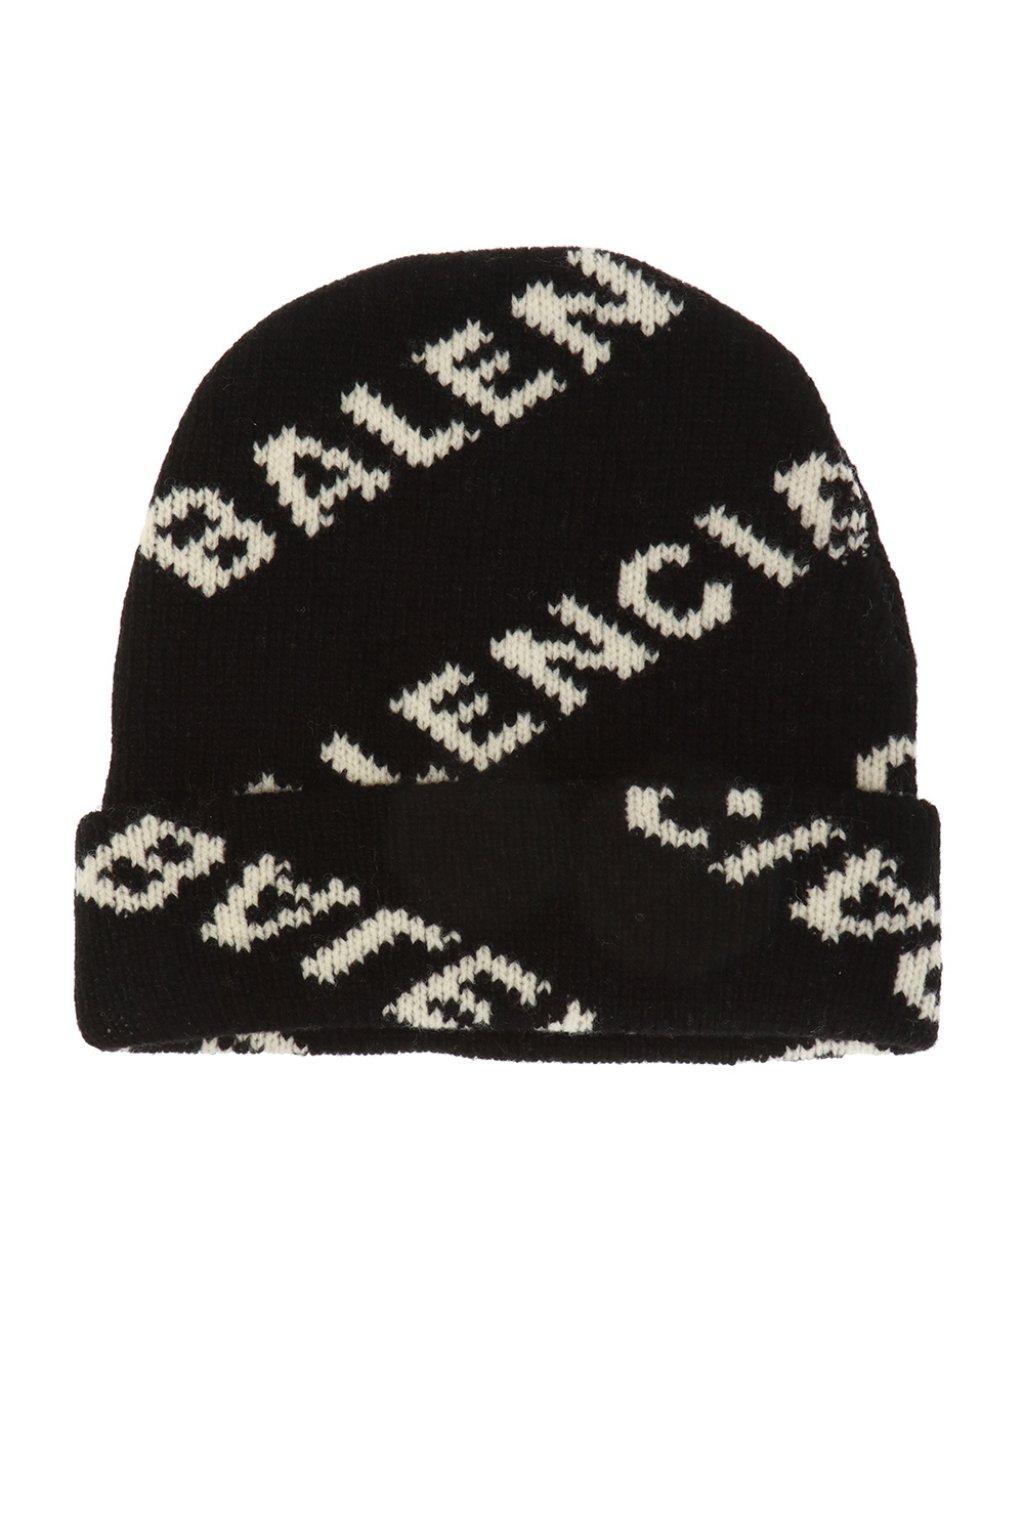 Balenciaga Wool Hat With Logo in Black - Lyst